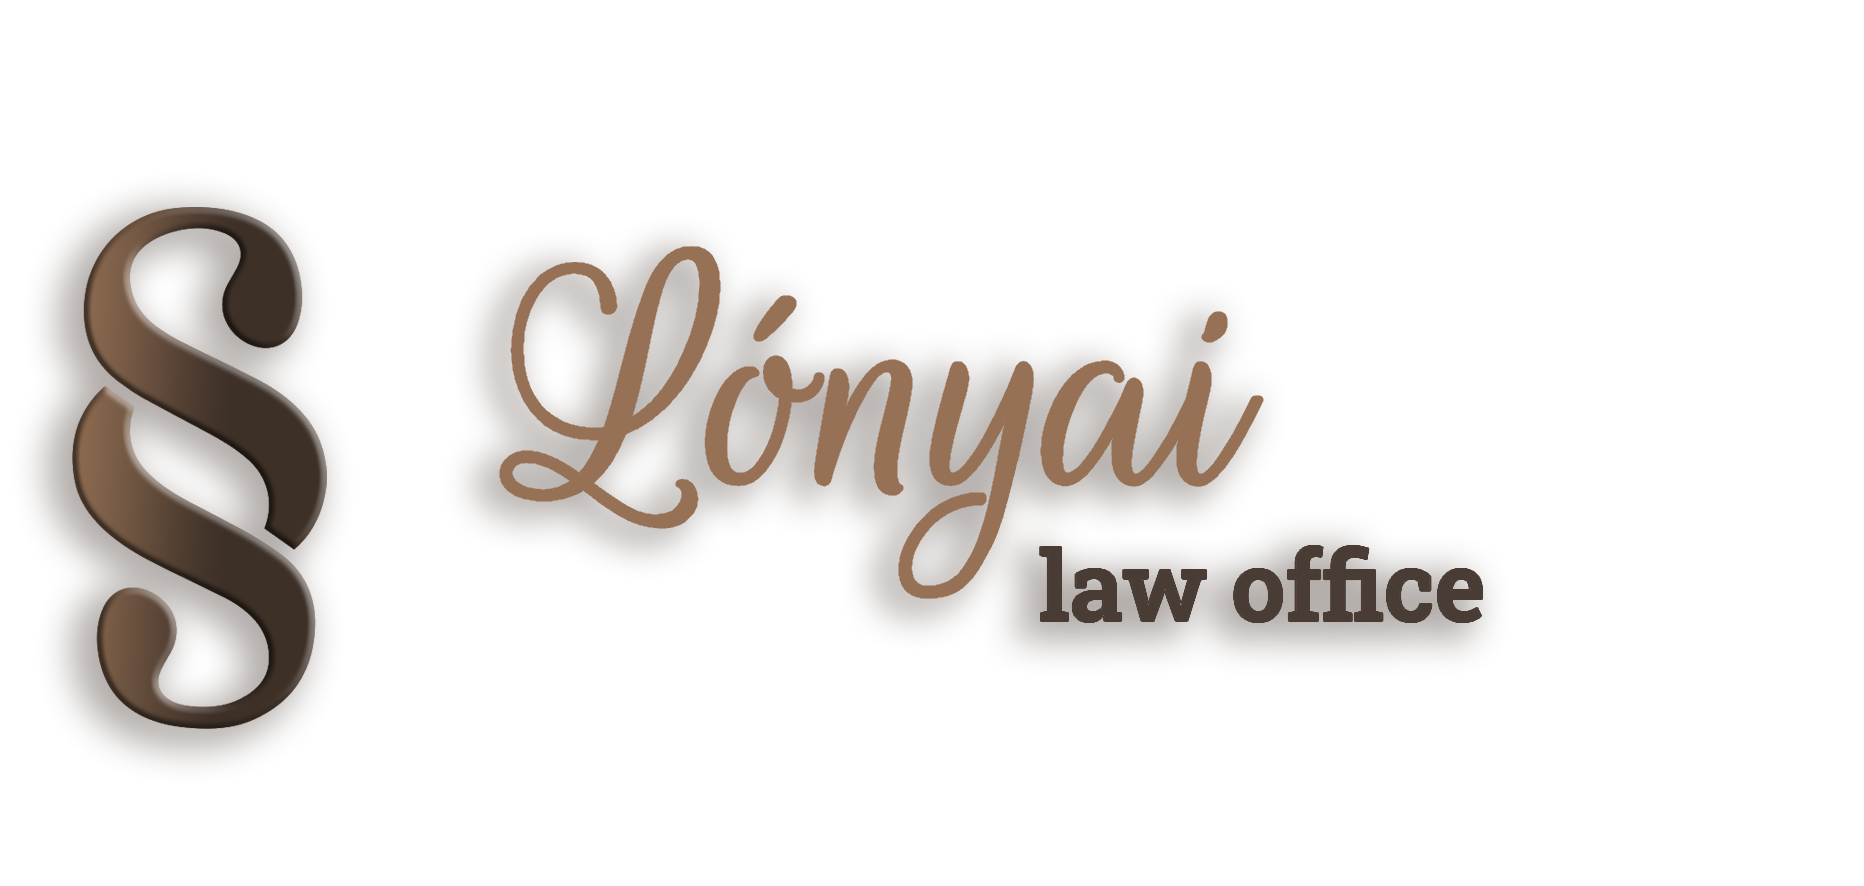 Lónyai law office